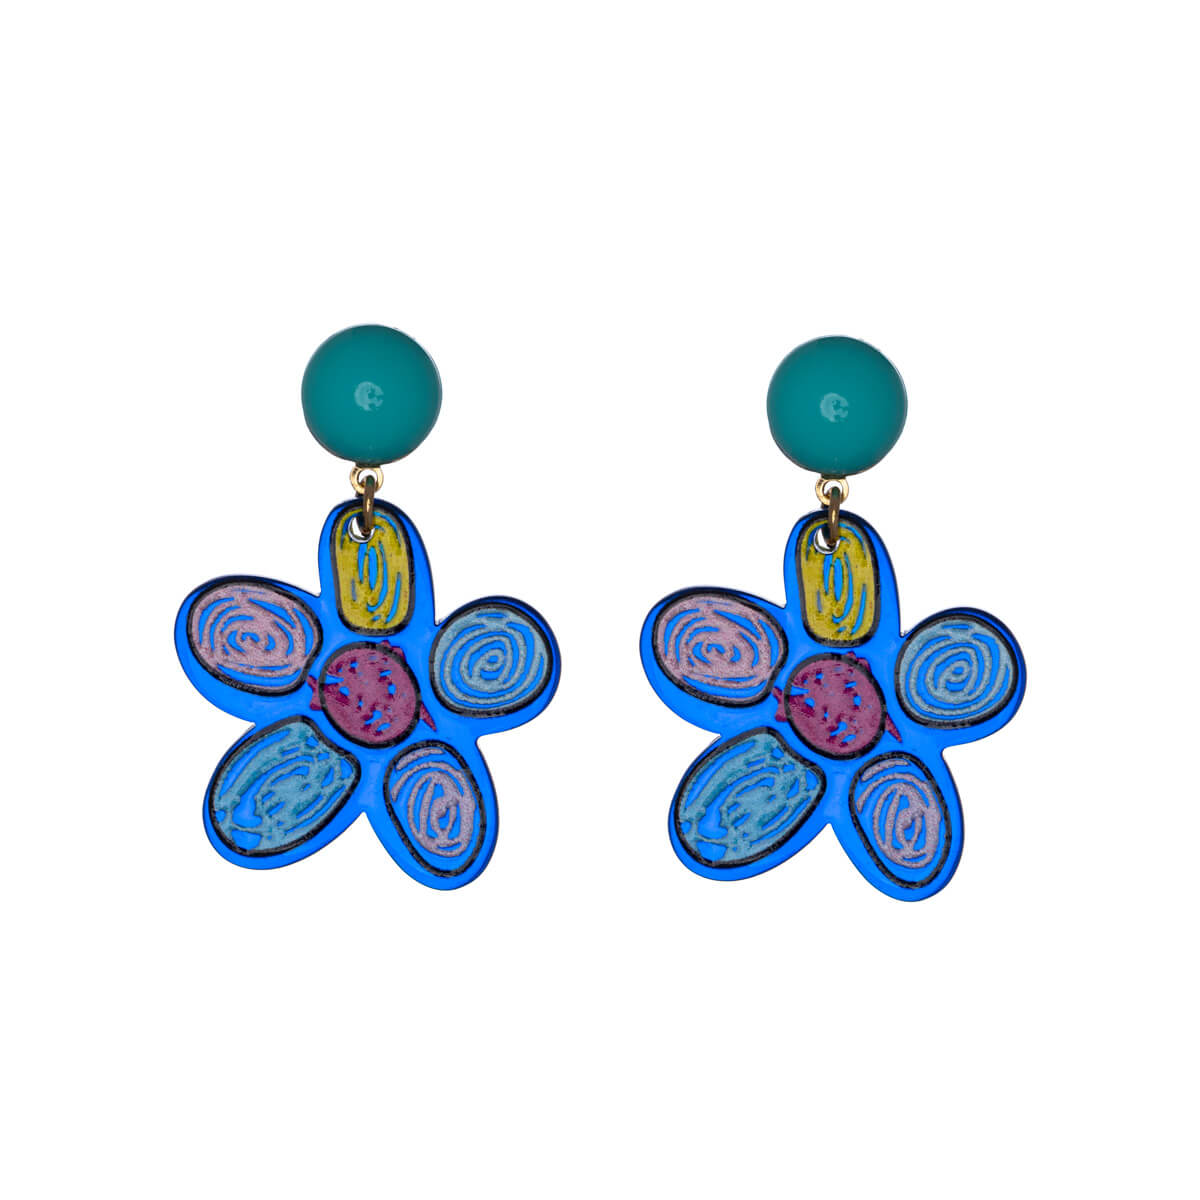 Plastic flower earrings